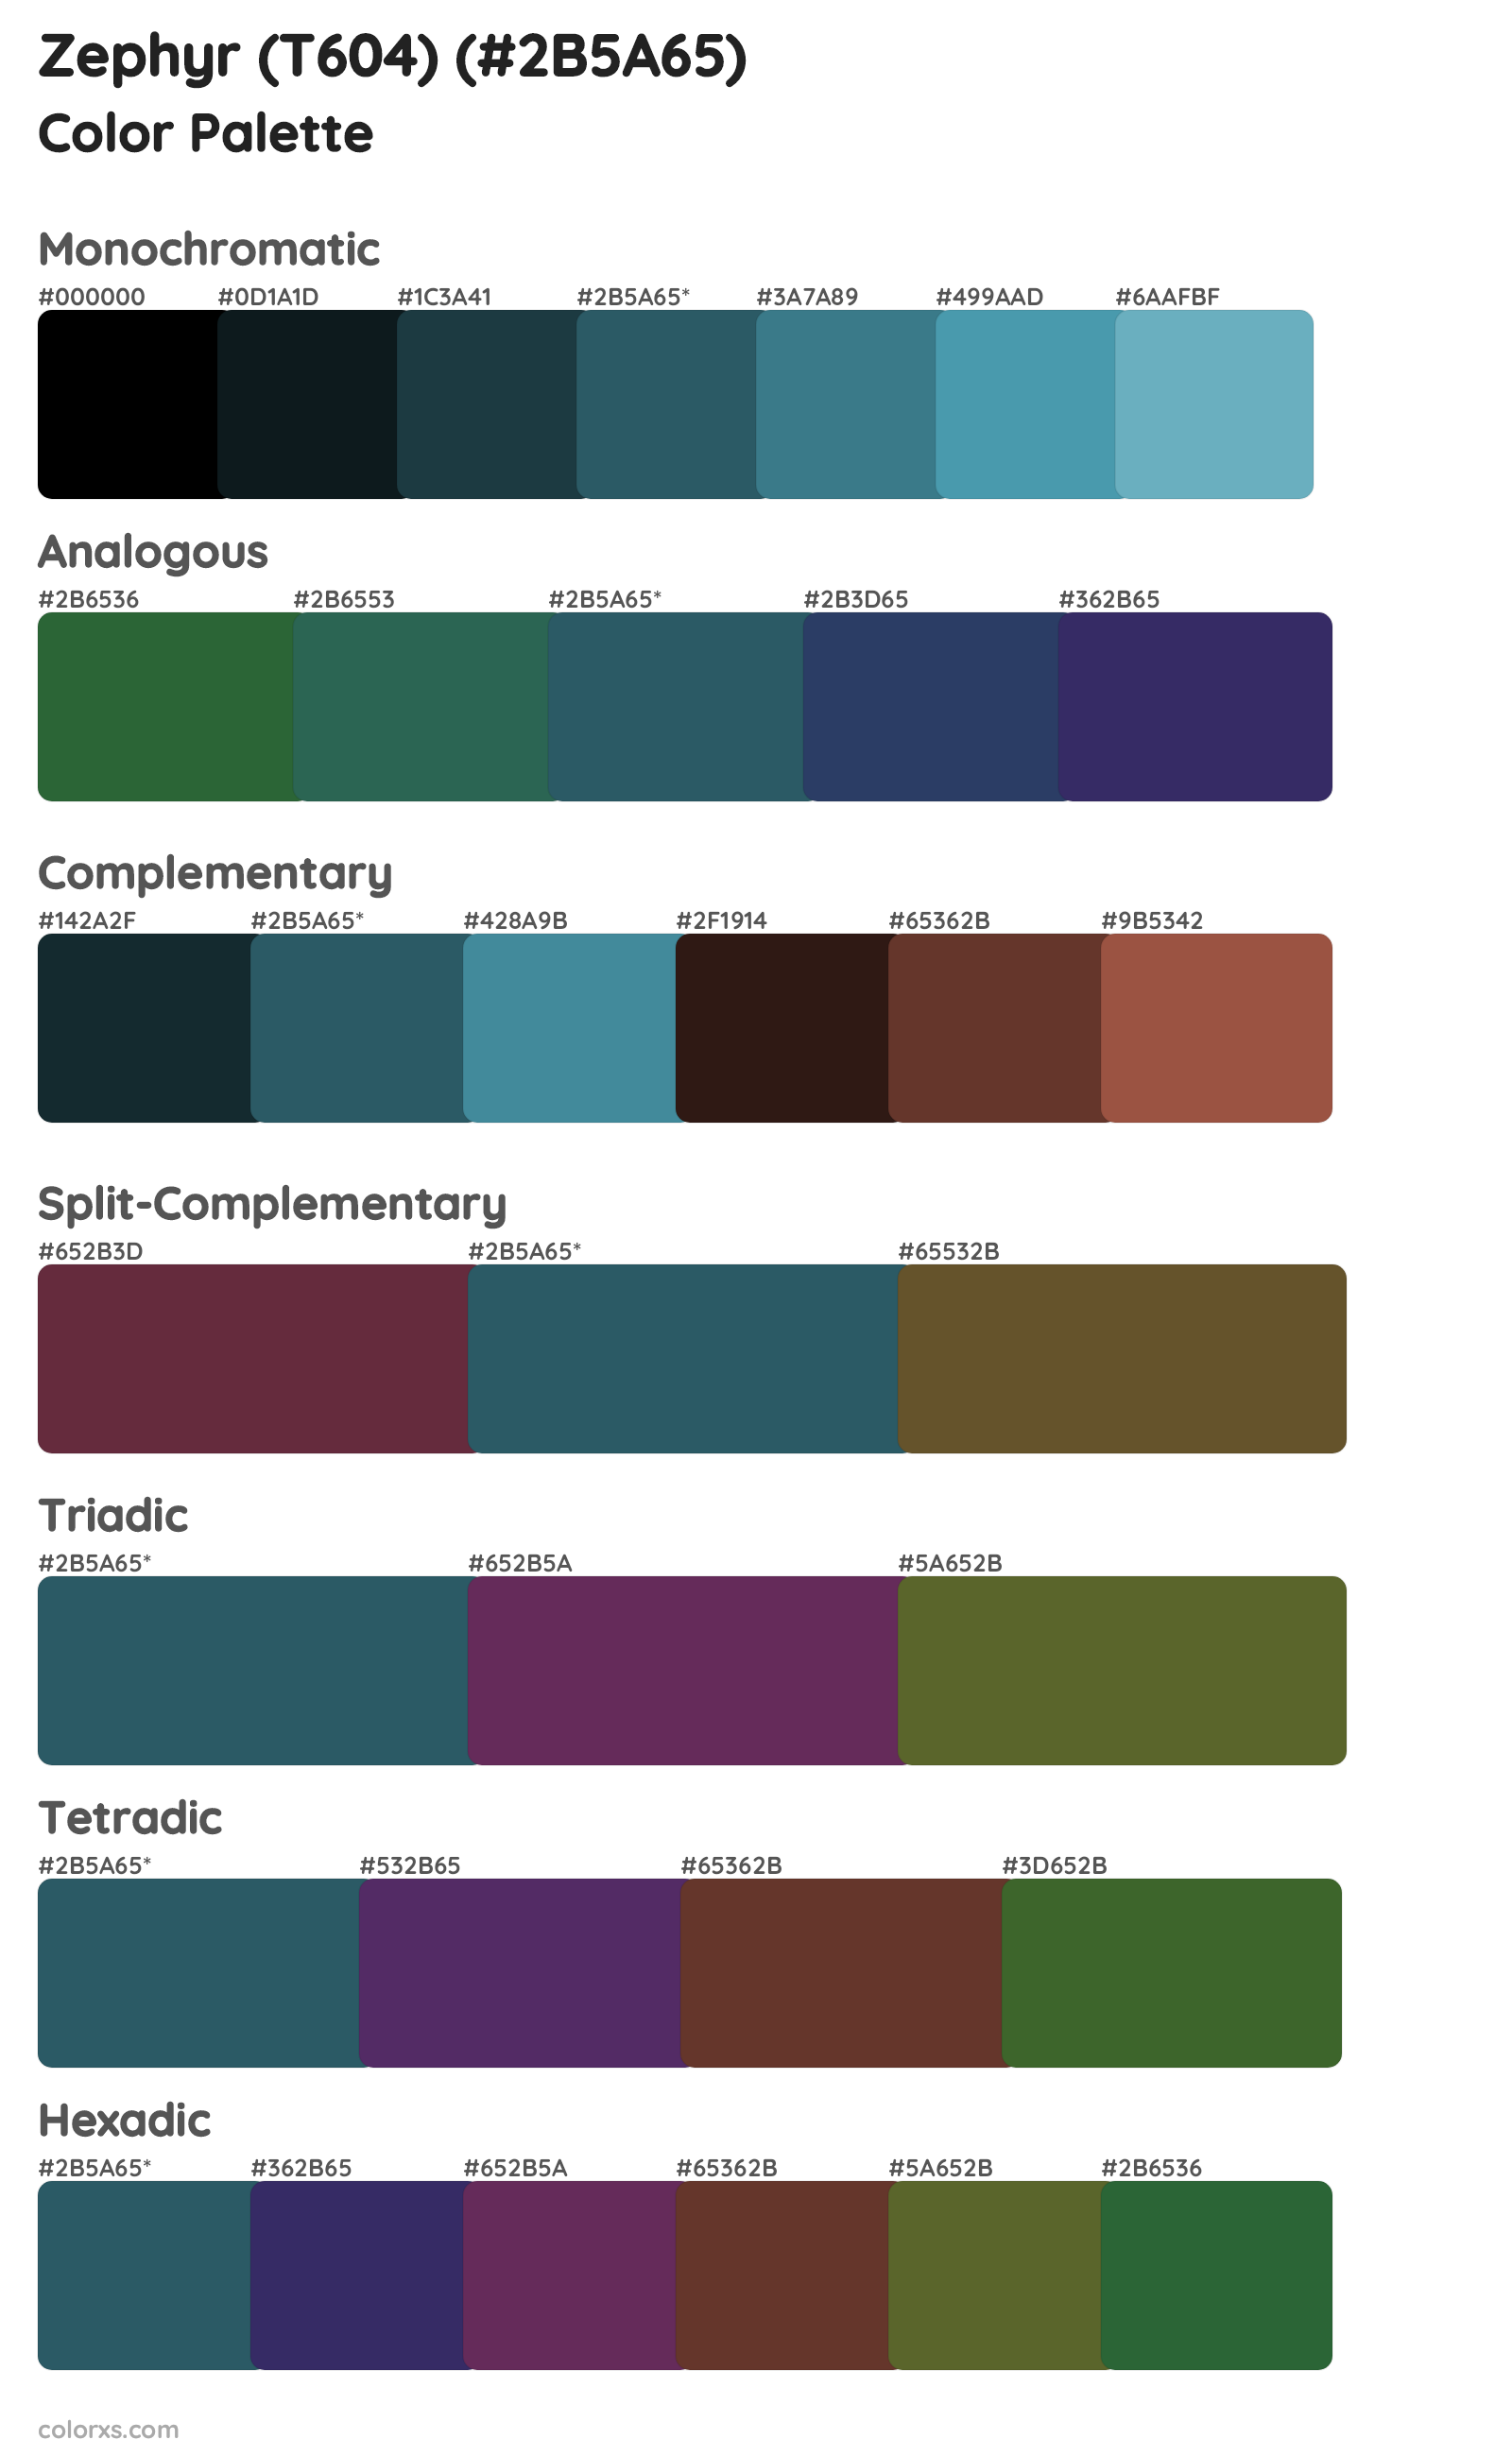 Zephyr (T604) Color Scheme Palettes